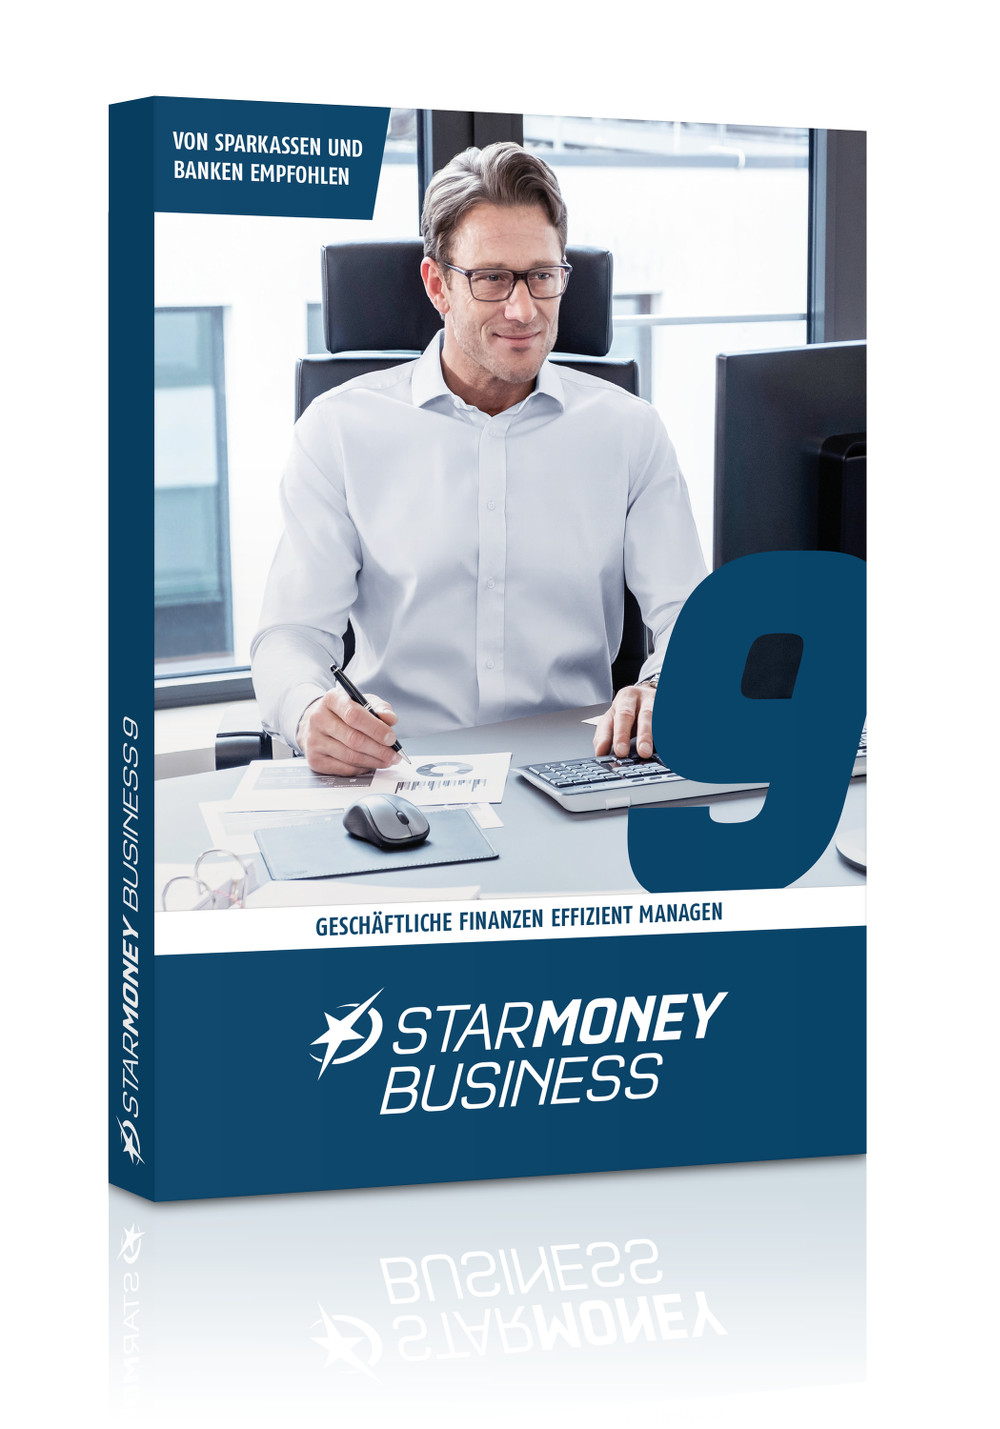 StarMoney Business 9: Eine Software – voller Überblick über die Unternehmensfinanzen 3